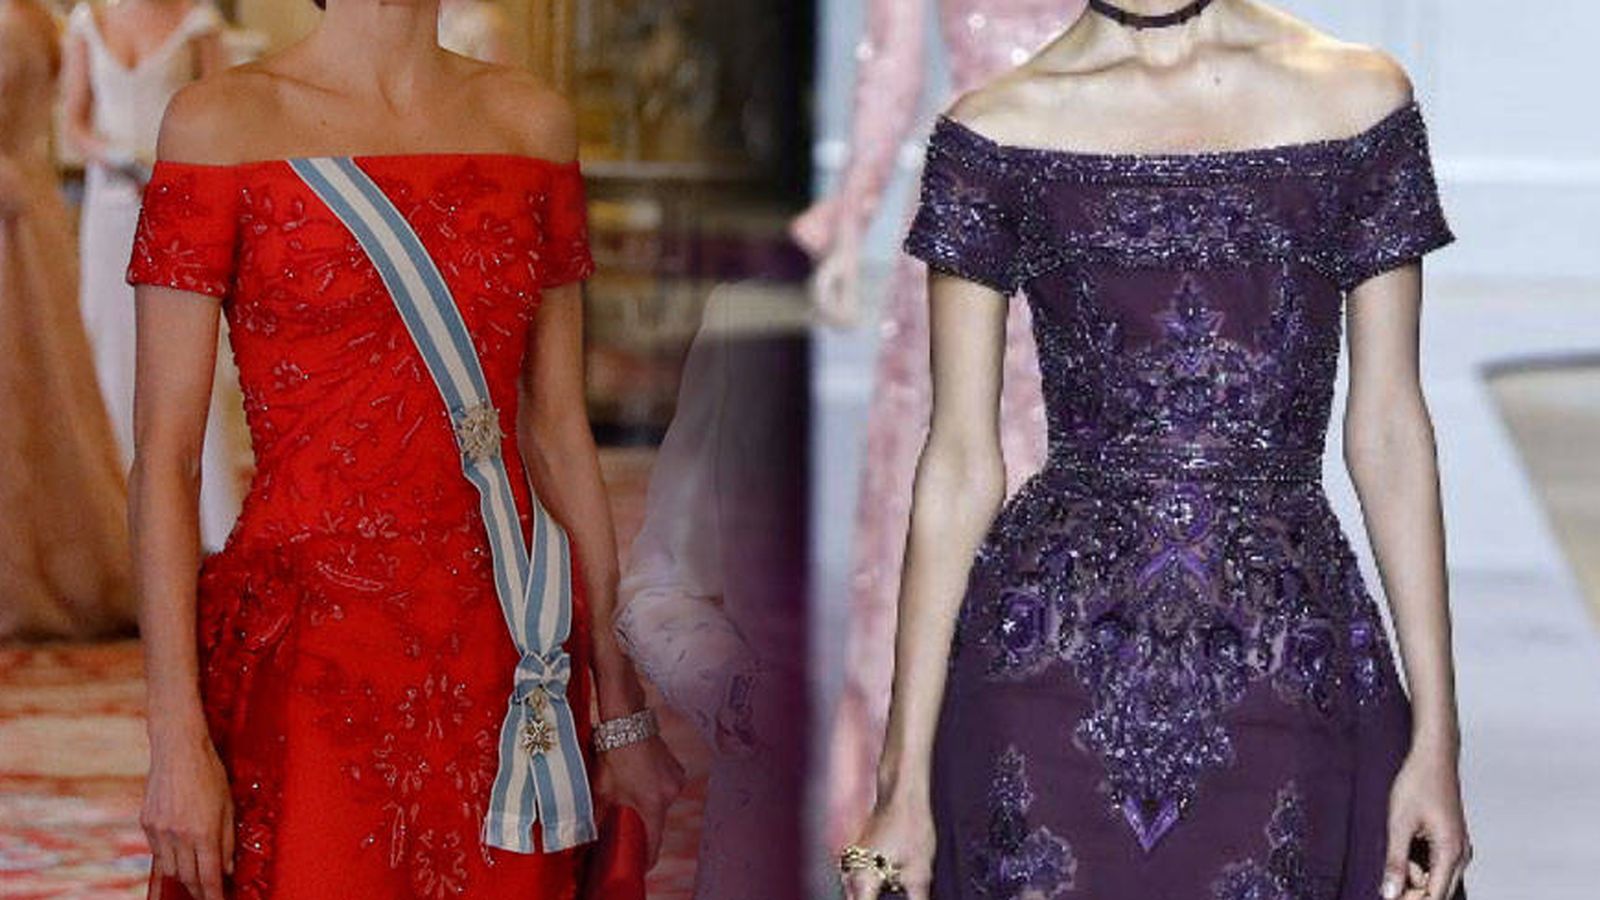 Foto: Una comparativa de los dos vestidos. (Fotomontaje de Vanitatis)